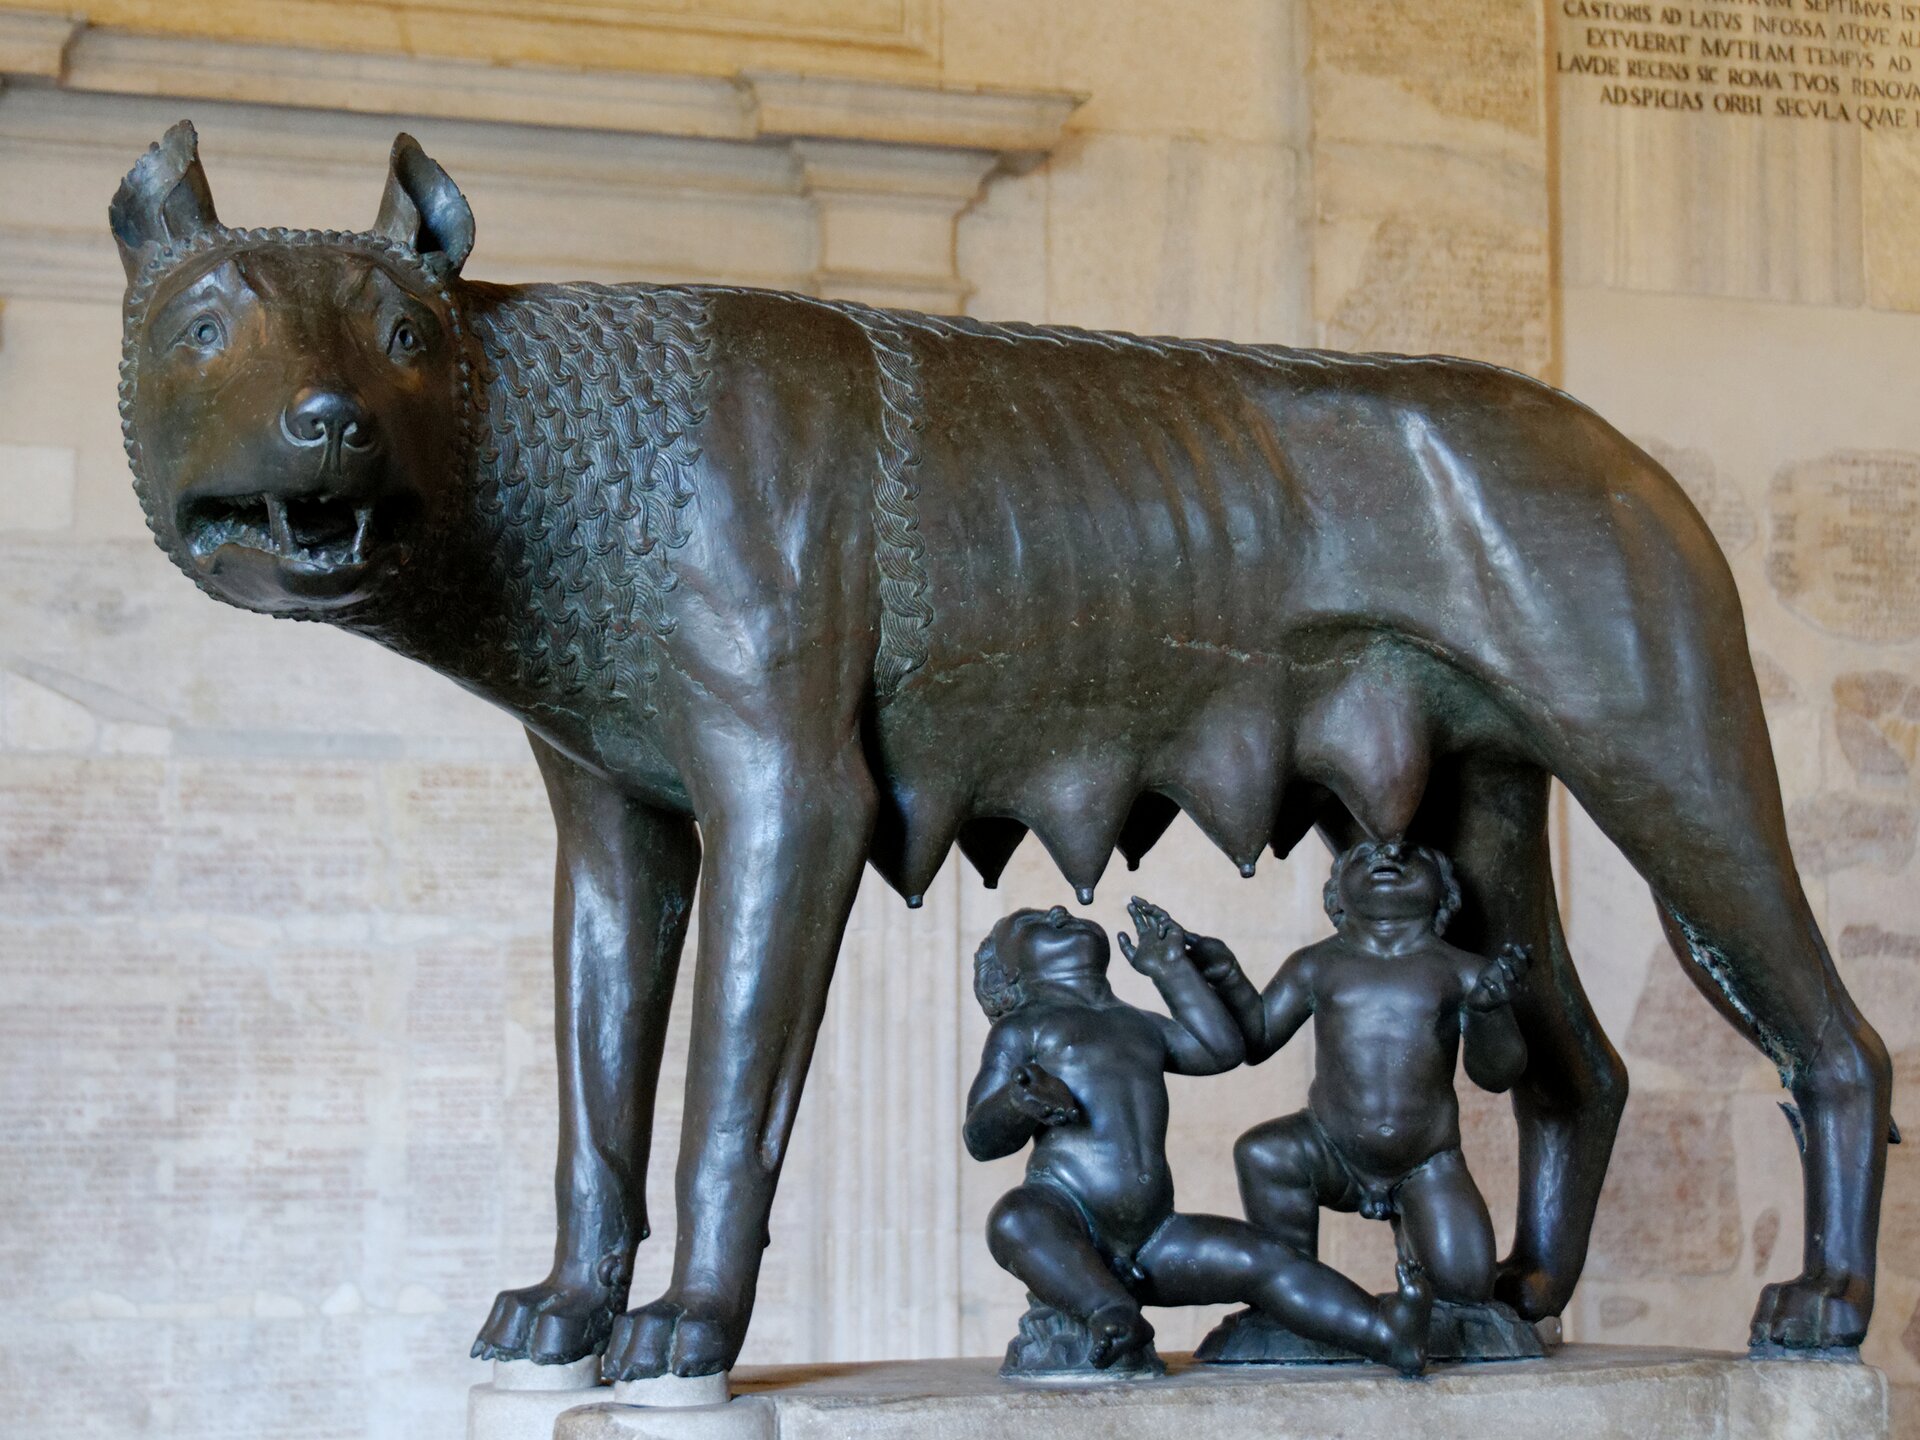 Ilustracja przedstawia „Wilczycę kapitolińską” - rzeźbę nieznanego autora nadnaturalnych rozmiarów. Brązowa wilczyca spogląda w bok, wyczekując zagrożenia. Pod nią znajdują się posążki legendarnych bliźniaków Romulusa i Remusa, spokojnie ssących jej sutki.